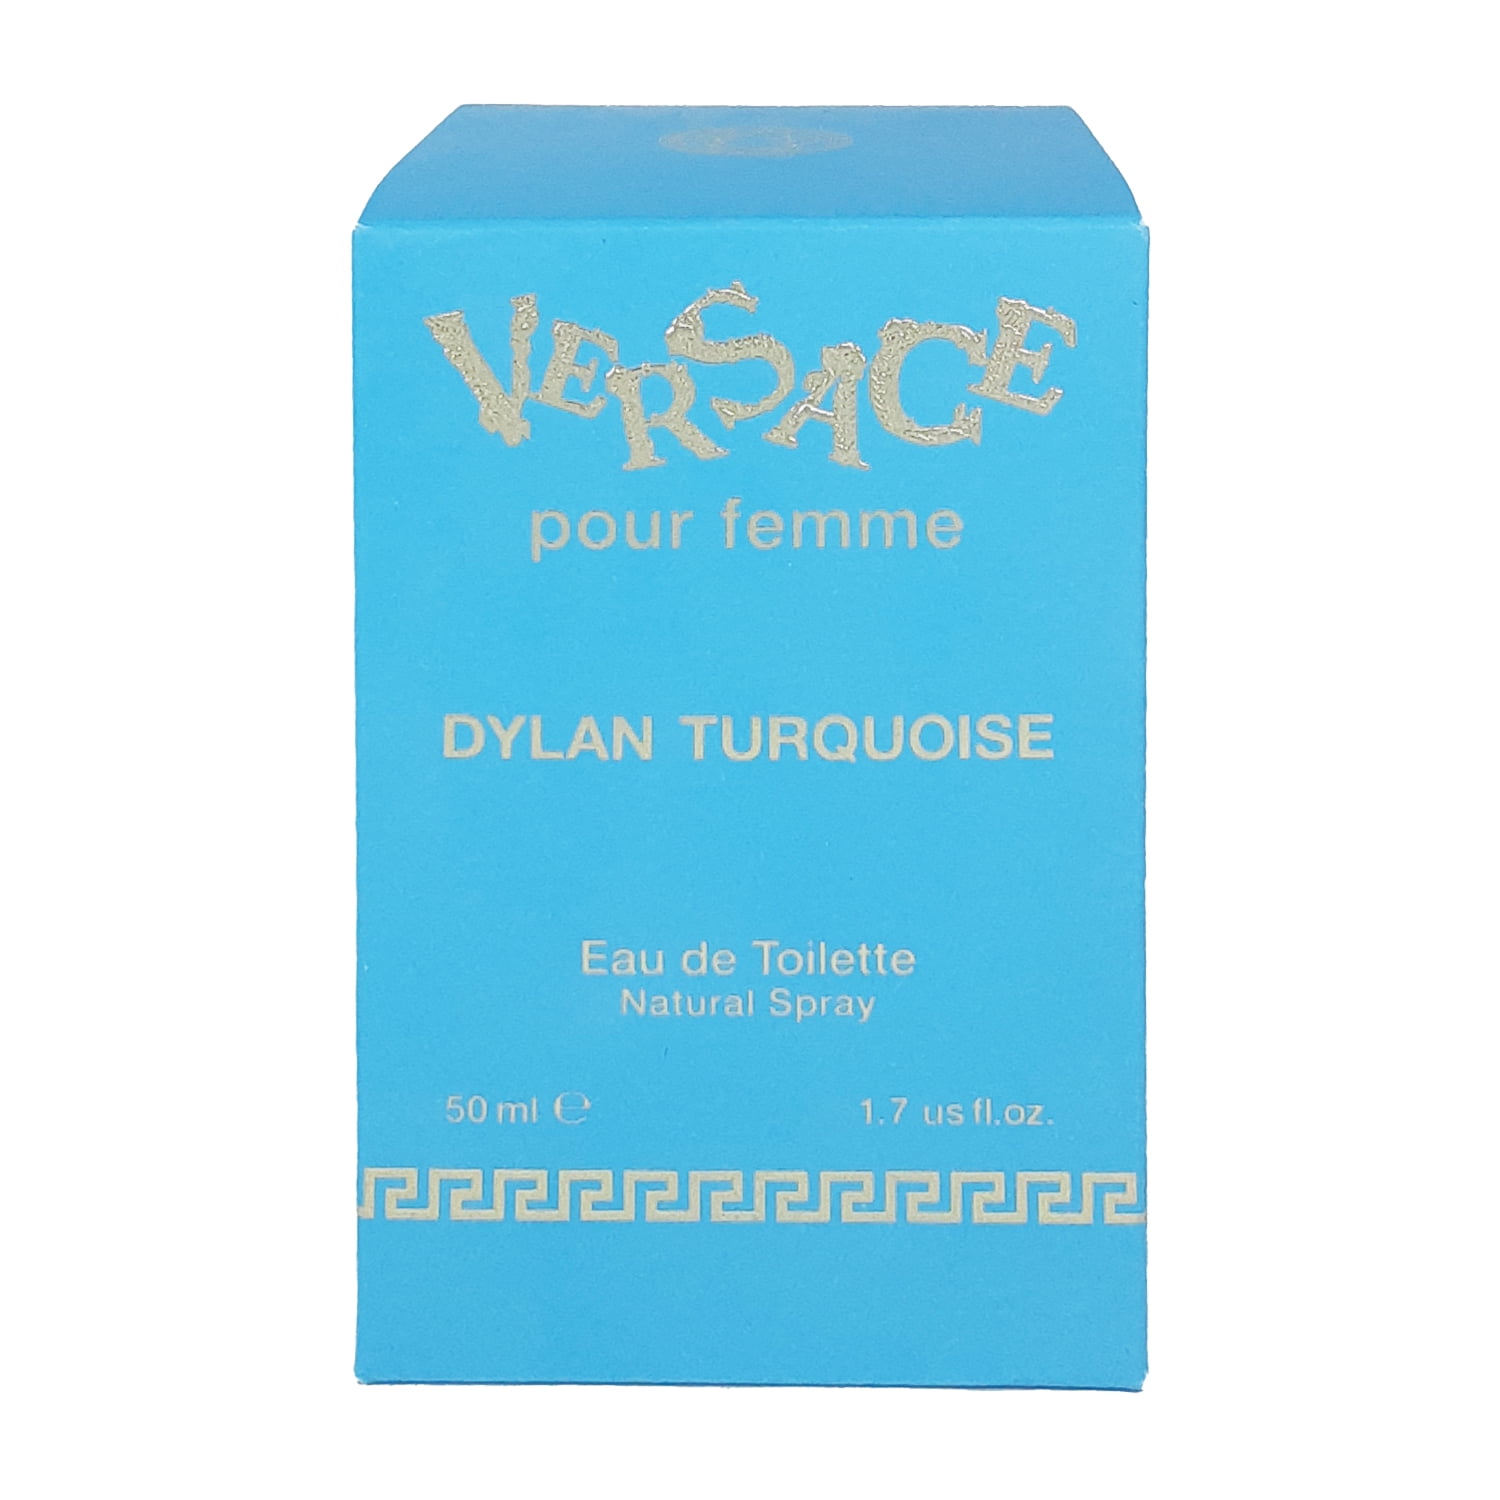 Versace Toilette Female De 1.7 oz Eau Pour Spray Turquoise by Femme Dylan Versace for